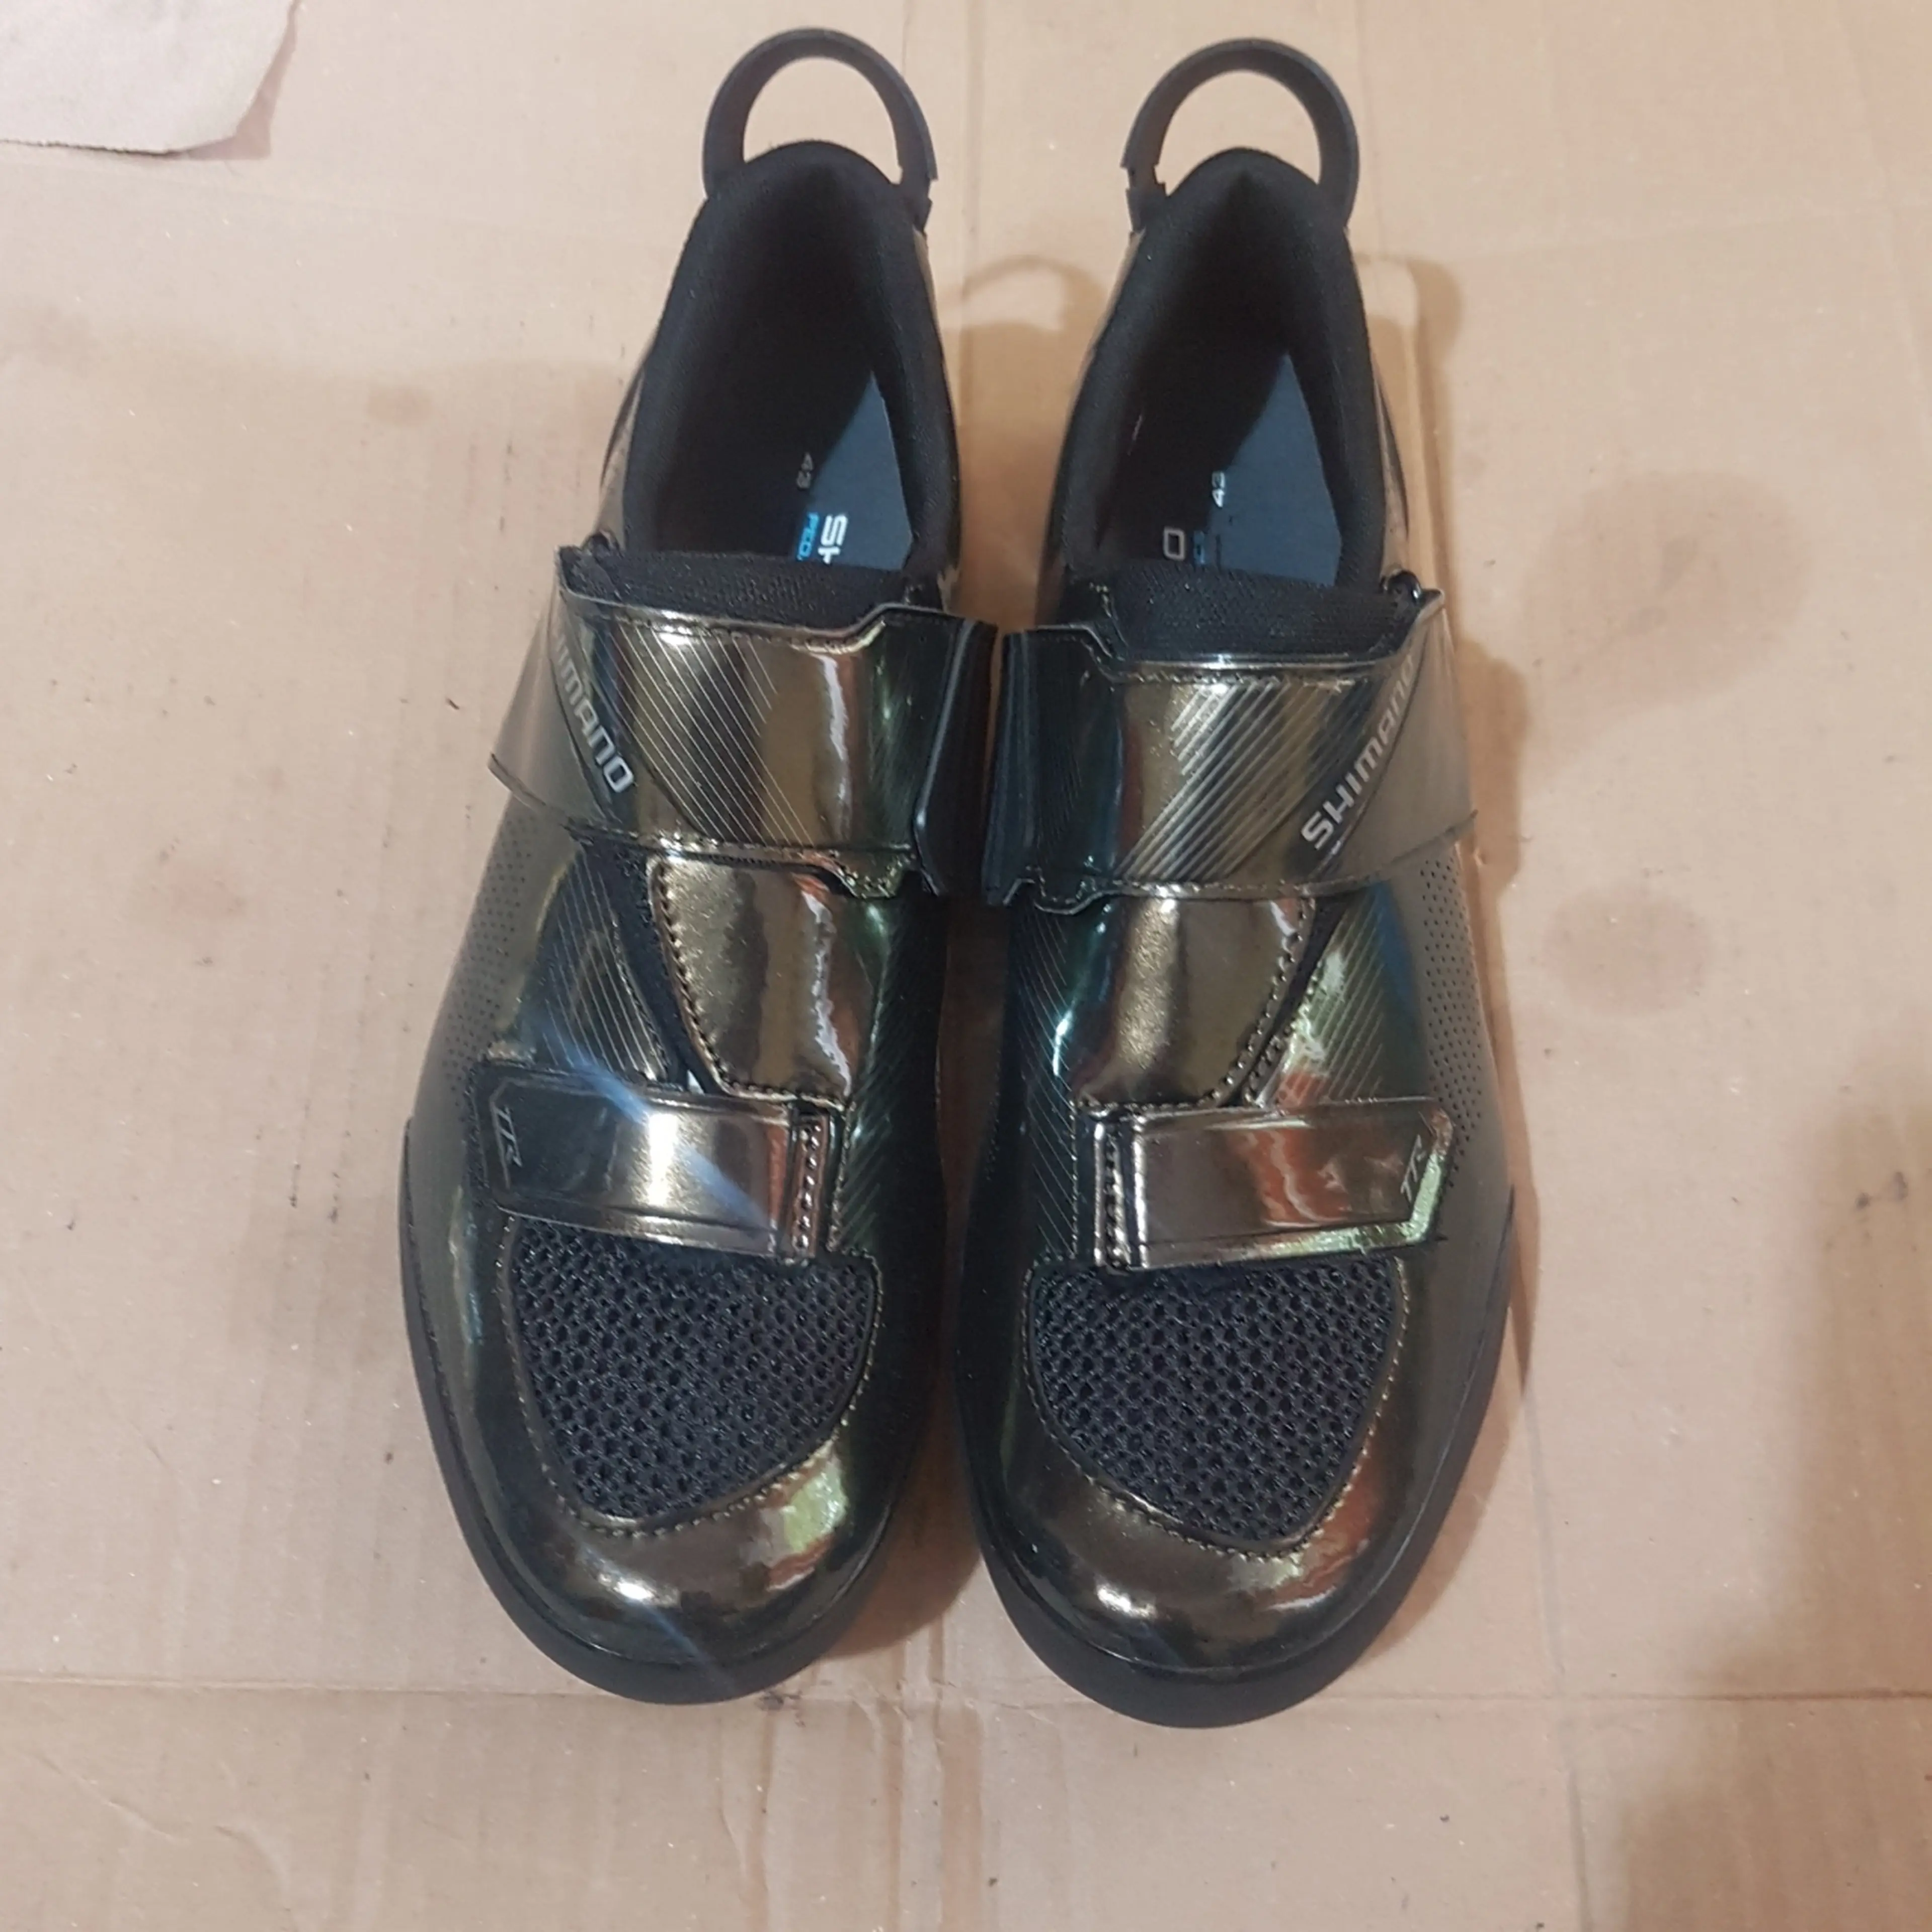 2. Pantofi Shimano TR 901